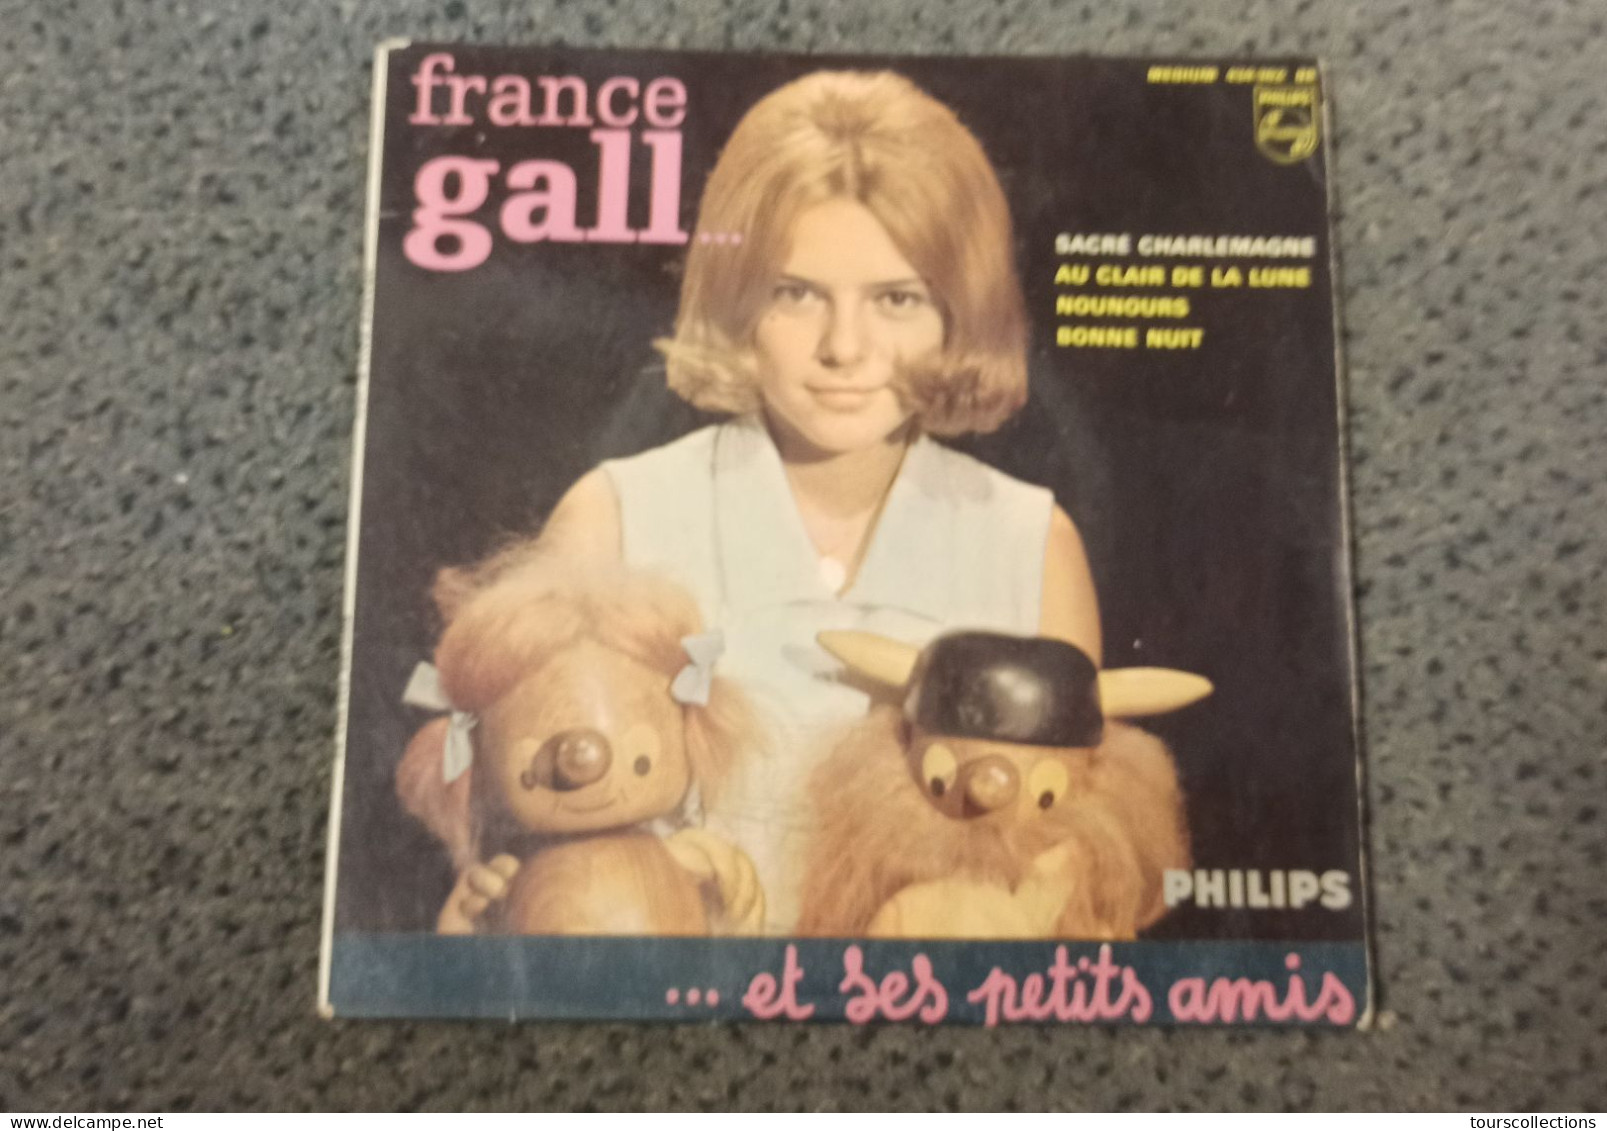 Vinyle 45 Tours 4 Titres FRANCE GALL Et Ses Petits Amis - SACRE CHARLEMAGNE Au Clair De La Lune Nounours Bonne Nuit - Niños